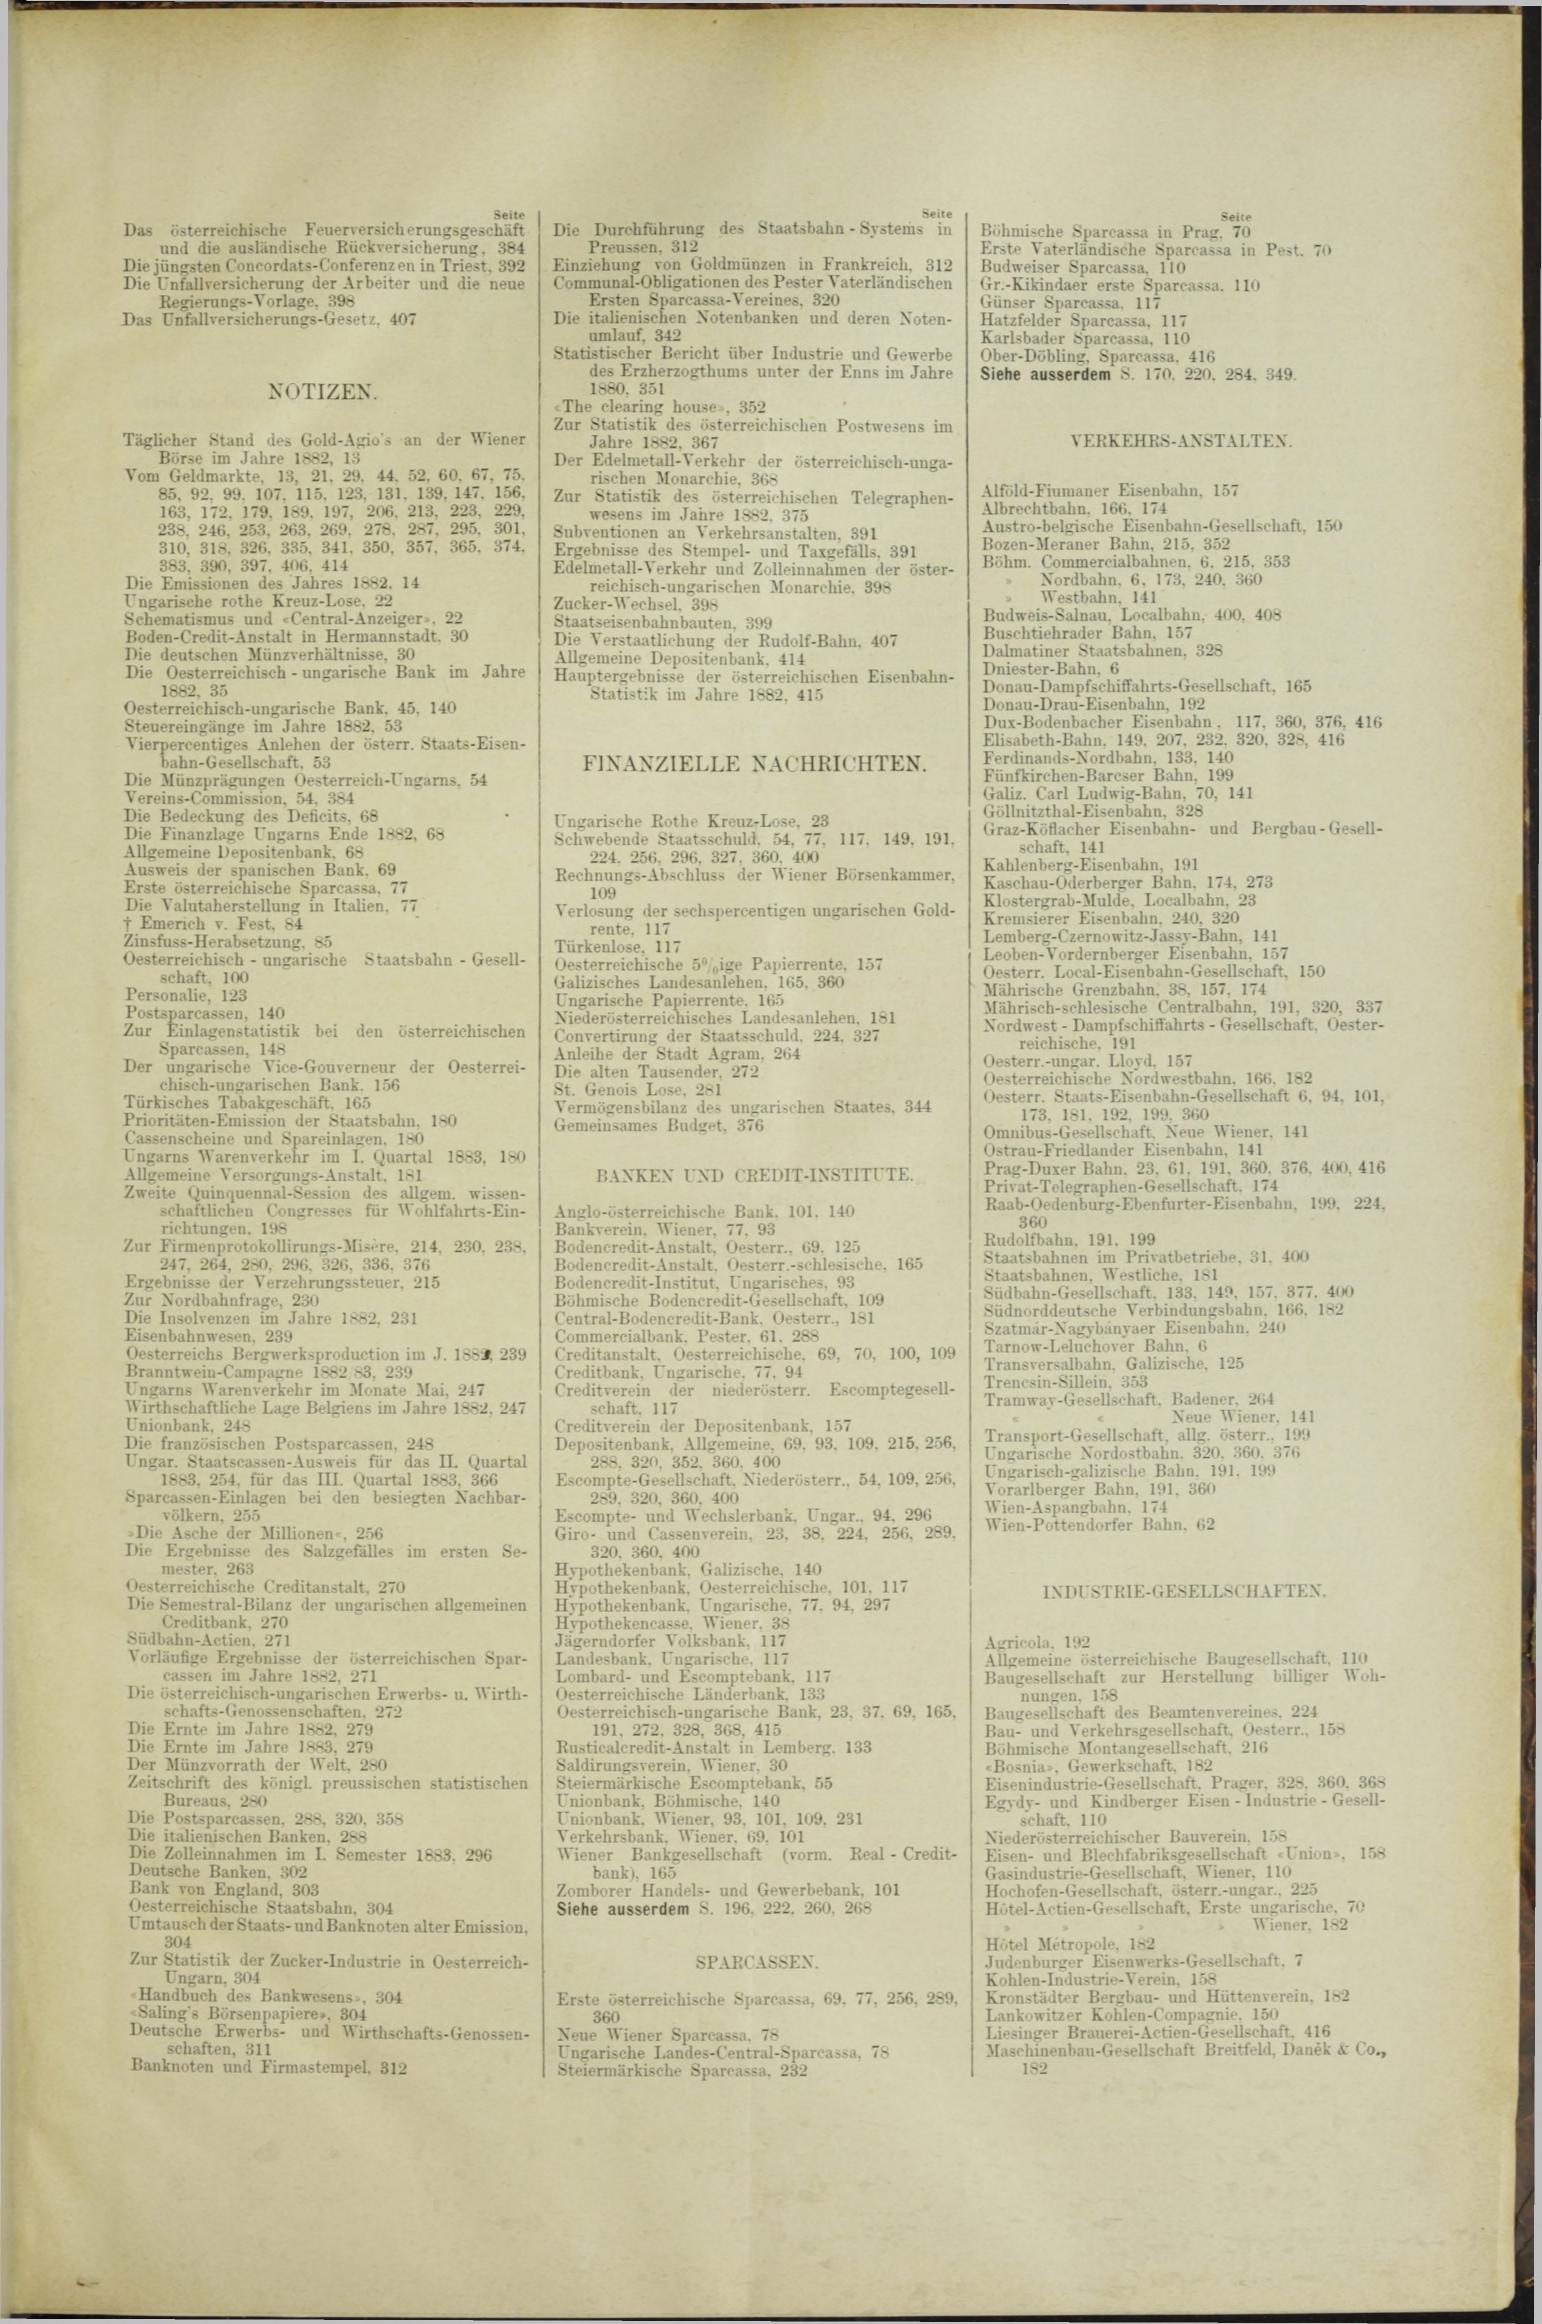 Der Tresor 10.05.1883 - Seite 11